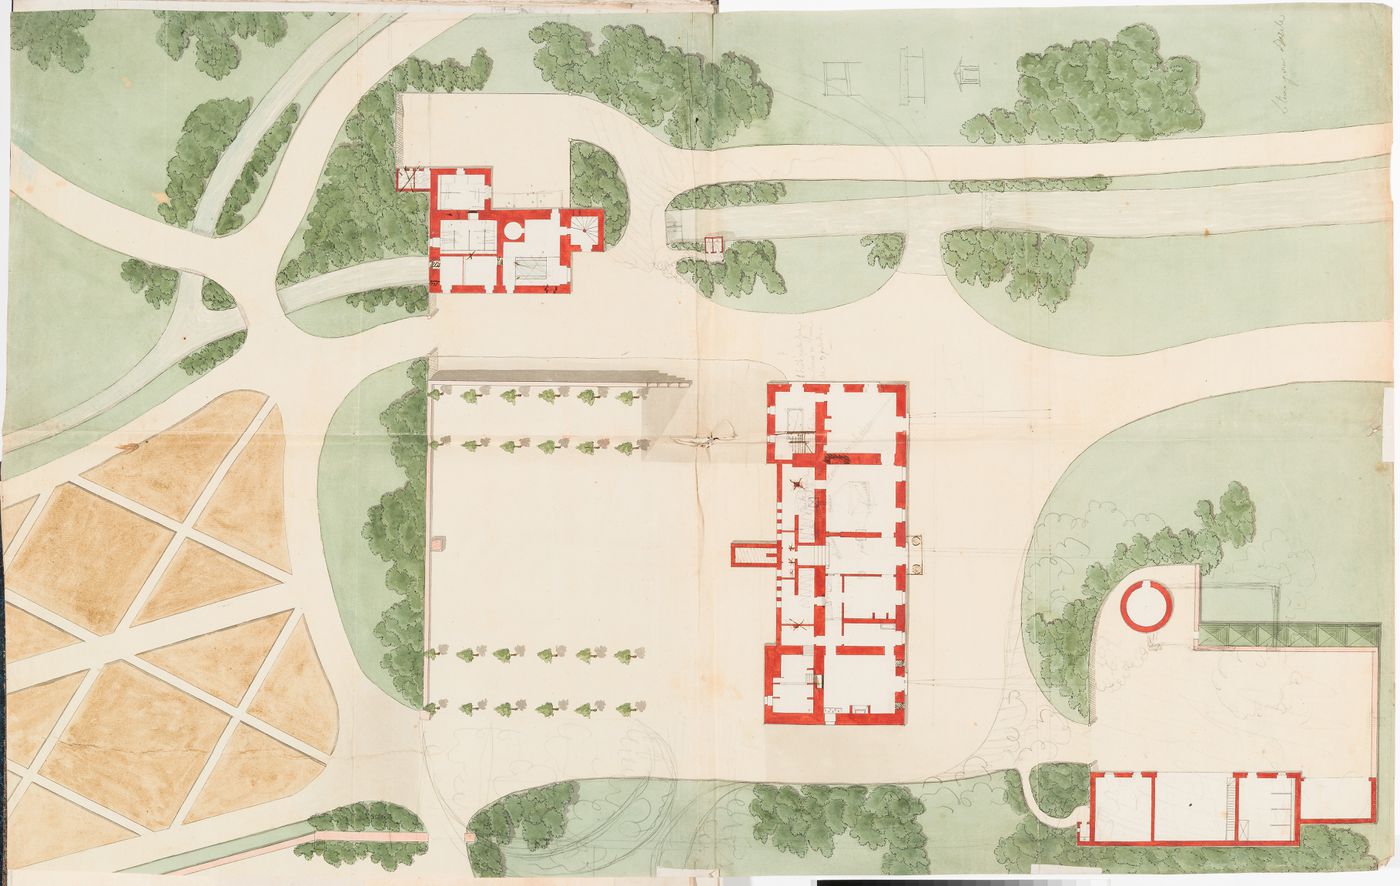 Partial site plan for Domaine de La Vallée showing the house and adjacent outbuildings; verso: Preliminary sketches, possibly for Domaine de La Vallée